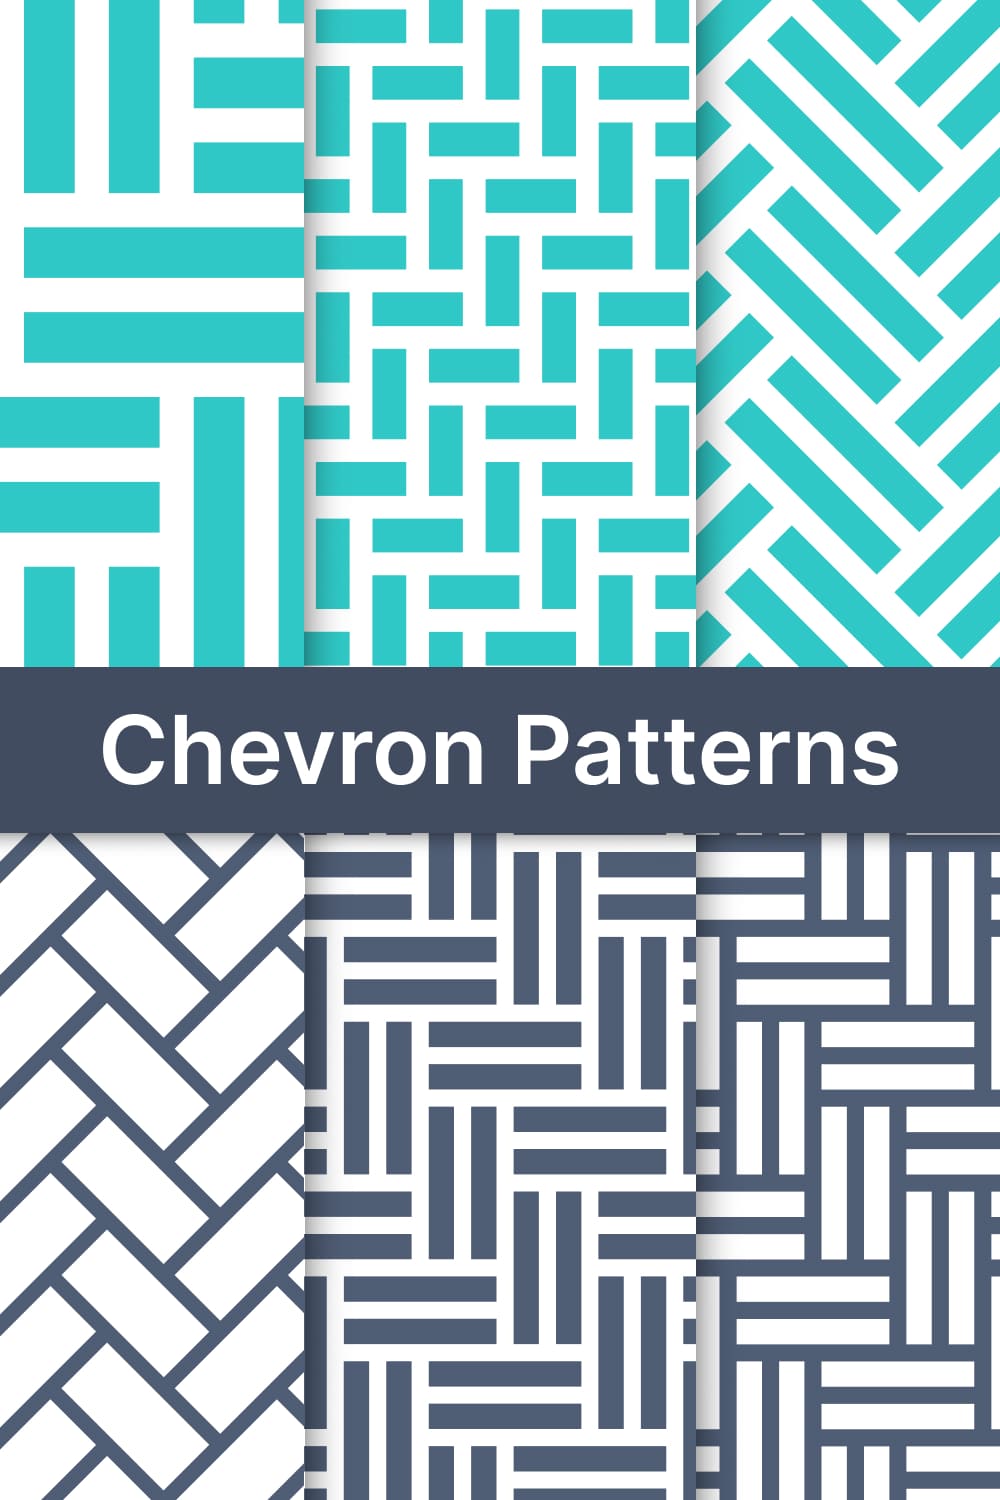 chevron patterns v3 03